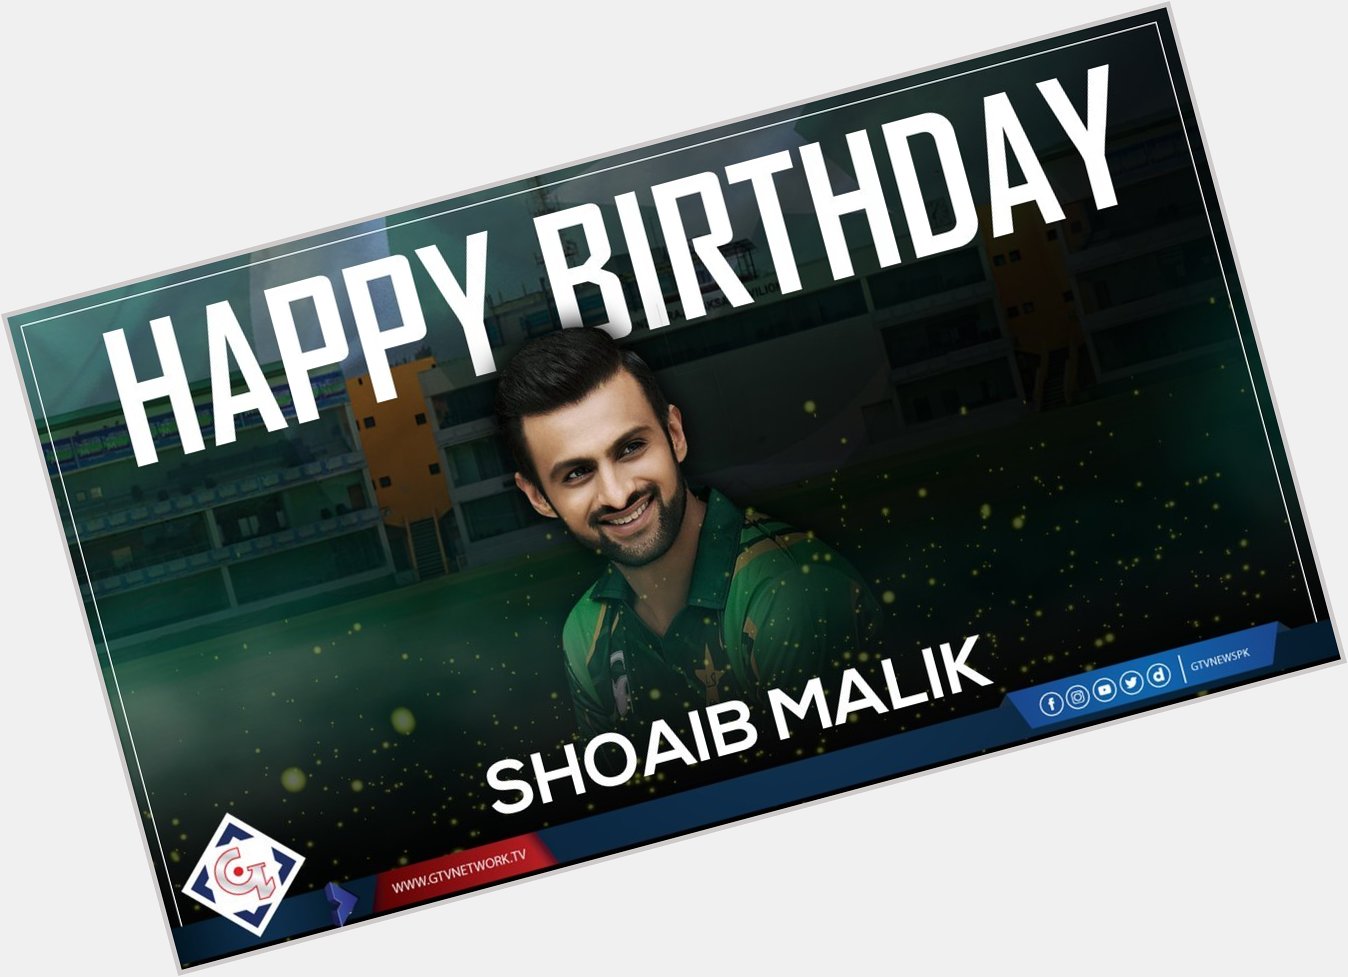 Happy 37th Birthday Shoaib Malik
Read Details:  